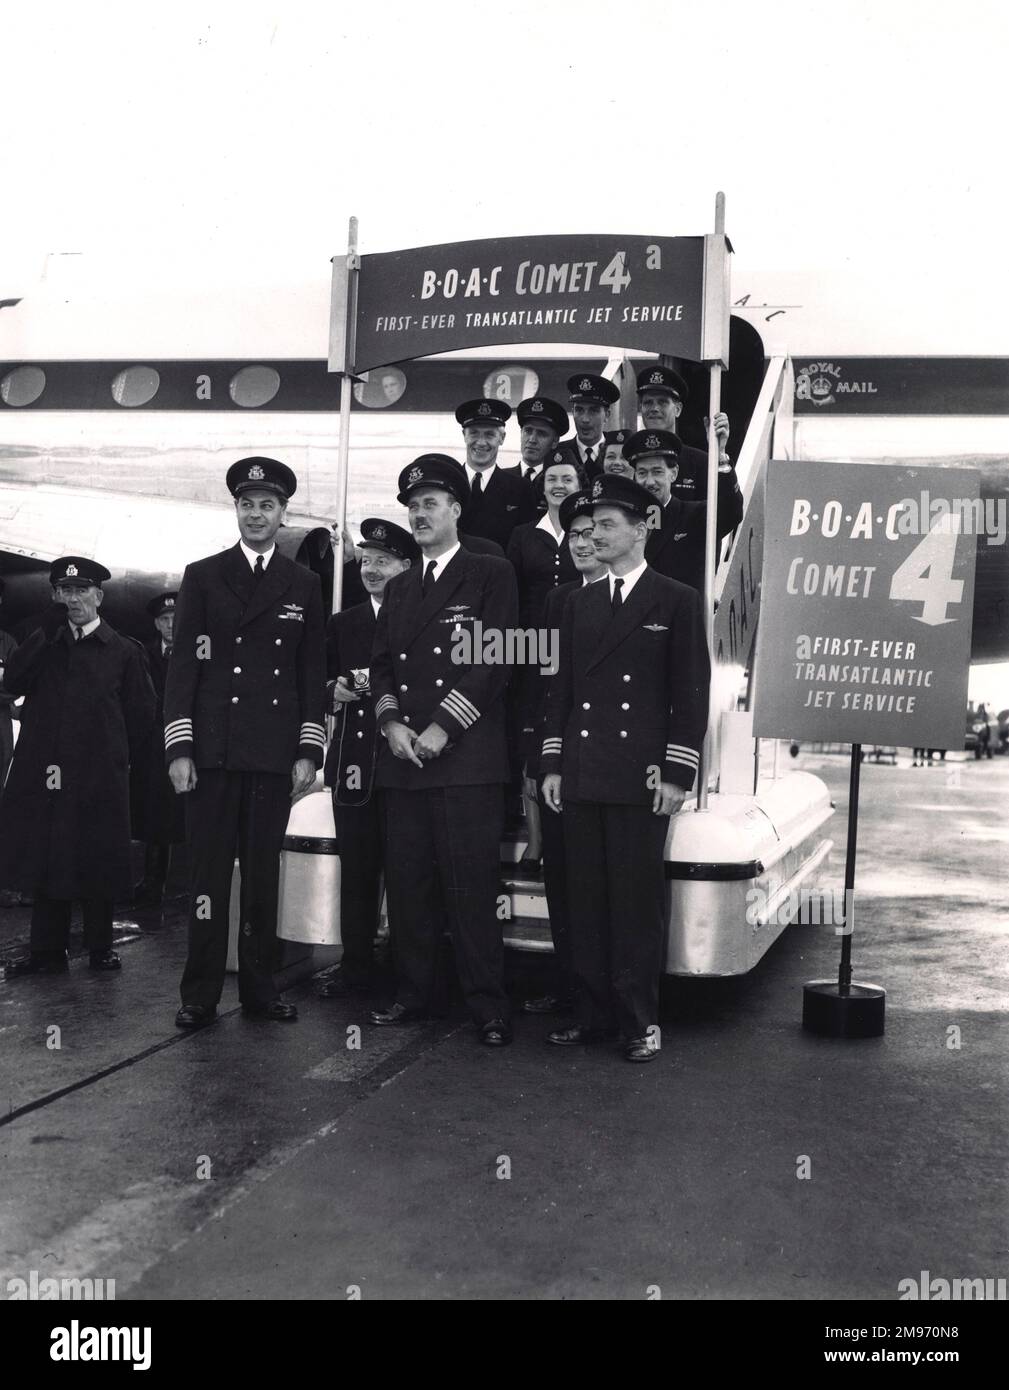 Die Besatzung des ersten Comet 4 (G-APDC) ist am 4. Oktober 1958 in New York. Captain J.B. Linton (vorderste Reihe ganz links), Capt Roy Millichap (erste Reihe in der Mitte) und Capt I.J. Monk (erste Reihe rechts). Außerdem: E/O Kingston (mit Kamera), E/O F.T. Durkin, N.O. D. Thompson, Stewardess T. Mullis, E/O L.W.R. MCLAREN, R/O AM MORGEN Ruthven, Steward E.A. Johnson, Steward I.N. Flanagan und Steward R.L. Dunkley. Stockfoto